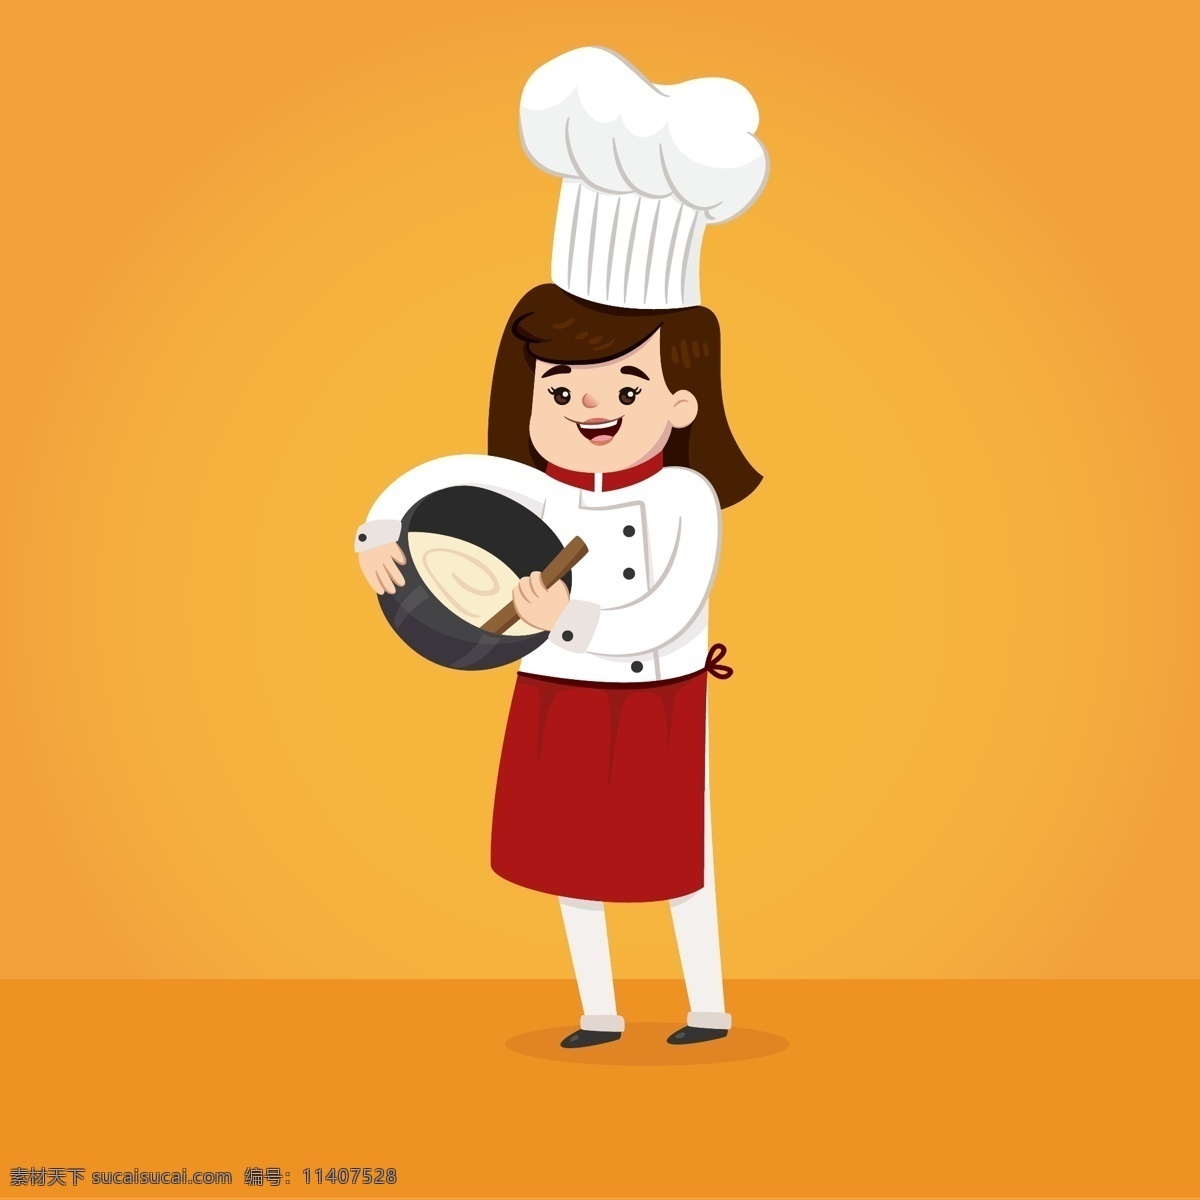 卡通 可爱 面点师 插画 人物 厨师 女性 帽子 行业